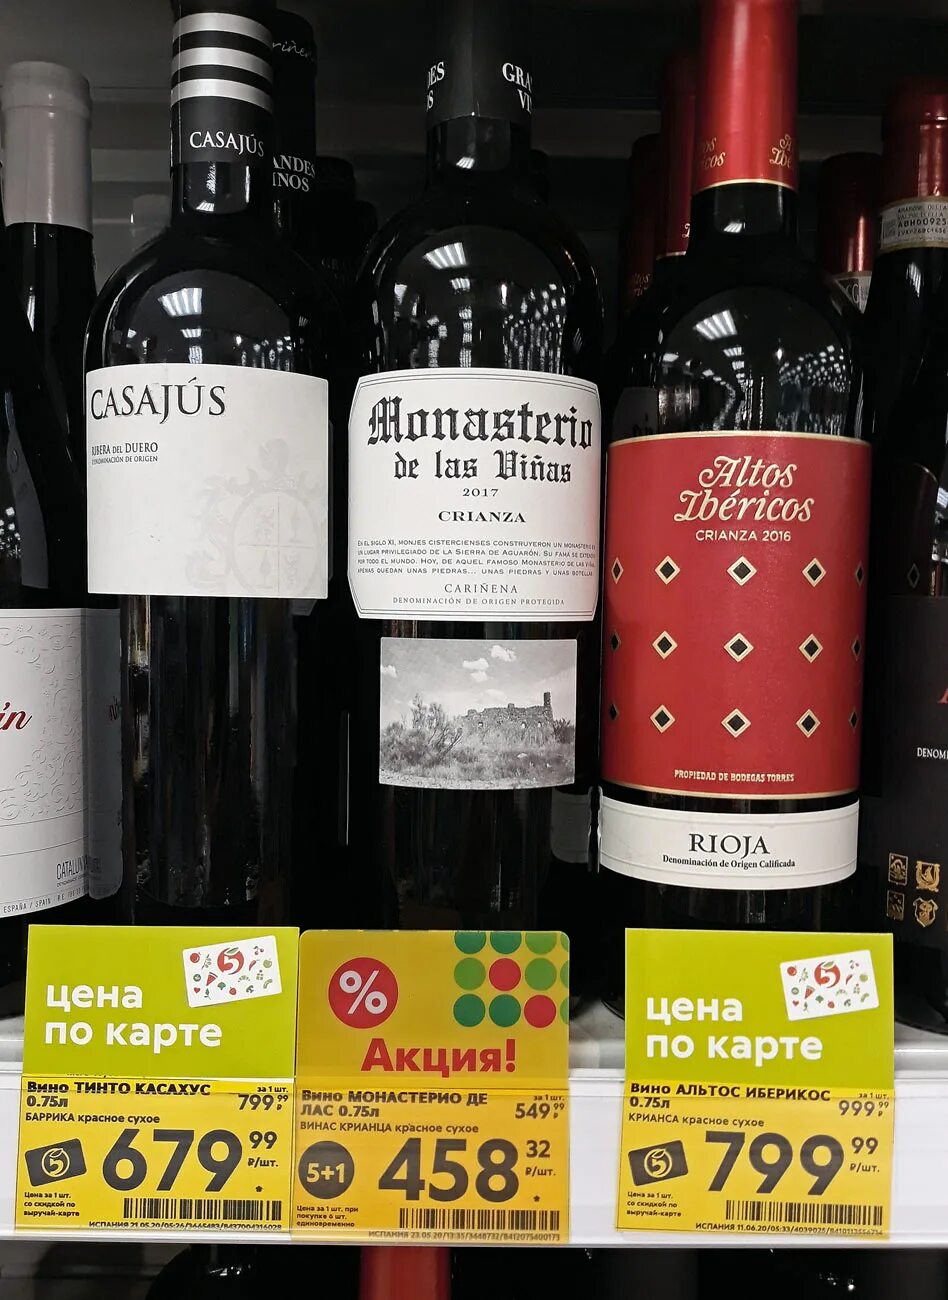 Вино Altos Ibericos Crianza. Вино красное сухое Испания в Пятерочке. Красное сухое вино 3 литра Пятерочка. Вино Альтос Иберикос Крианса красное сухое. Вино в пятерке